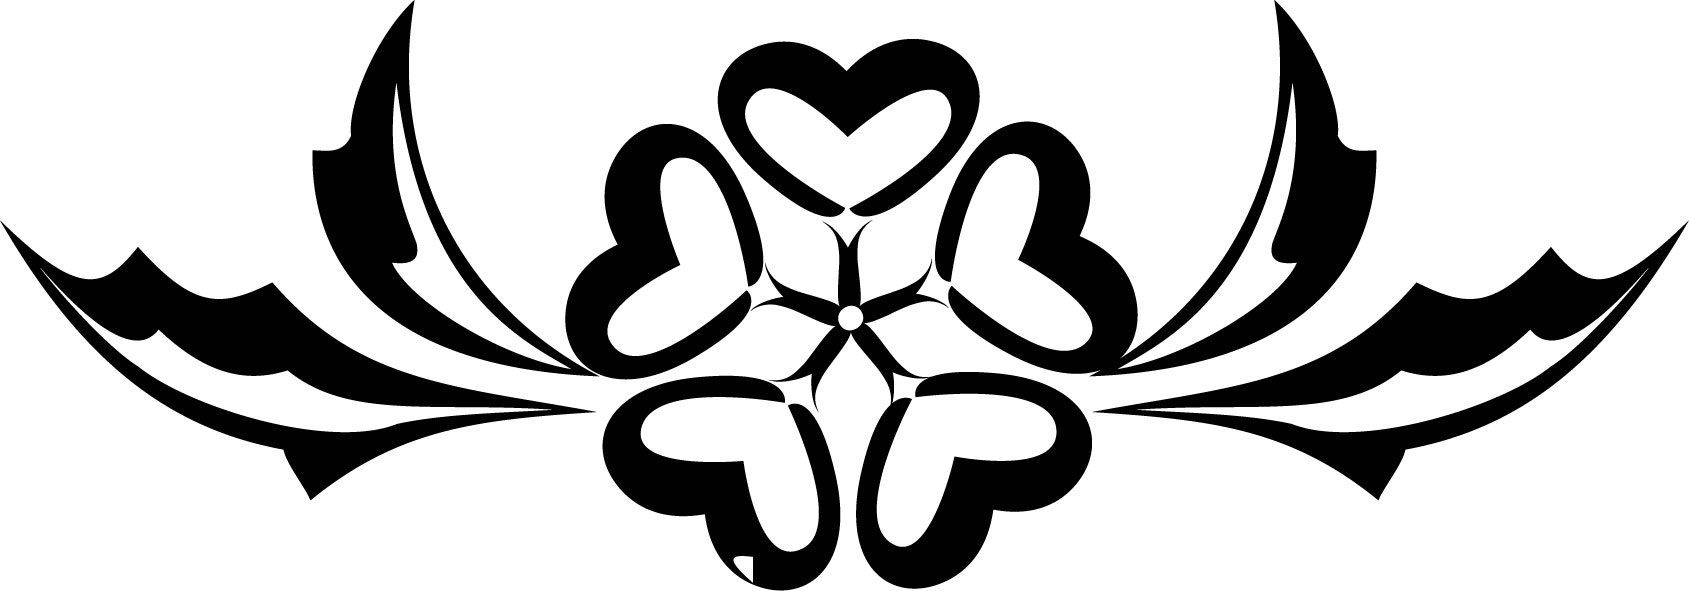 花のイラスト フリー素材 白黒 モノクロno 352 白黒 葉 ハート